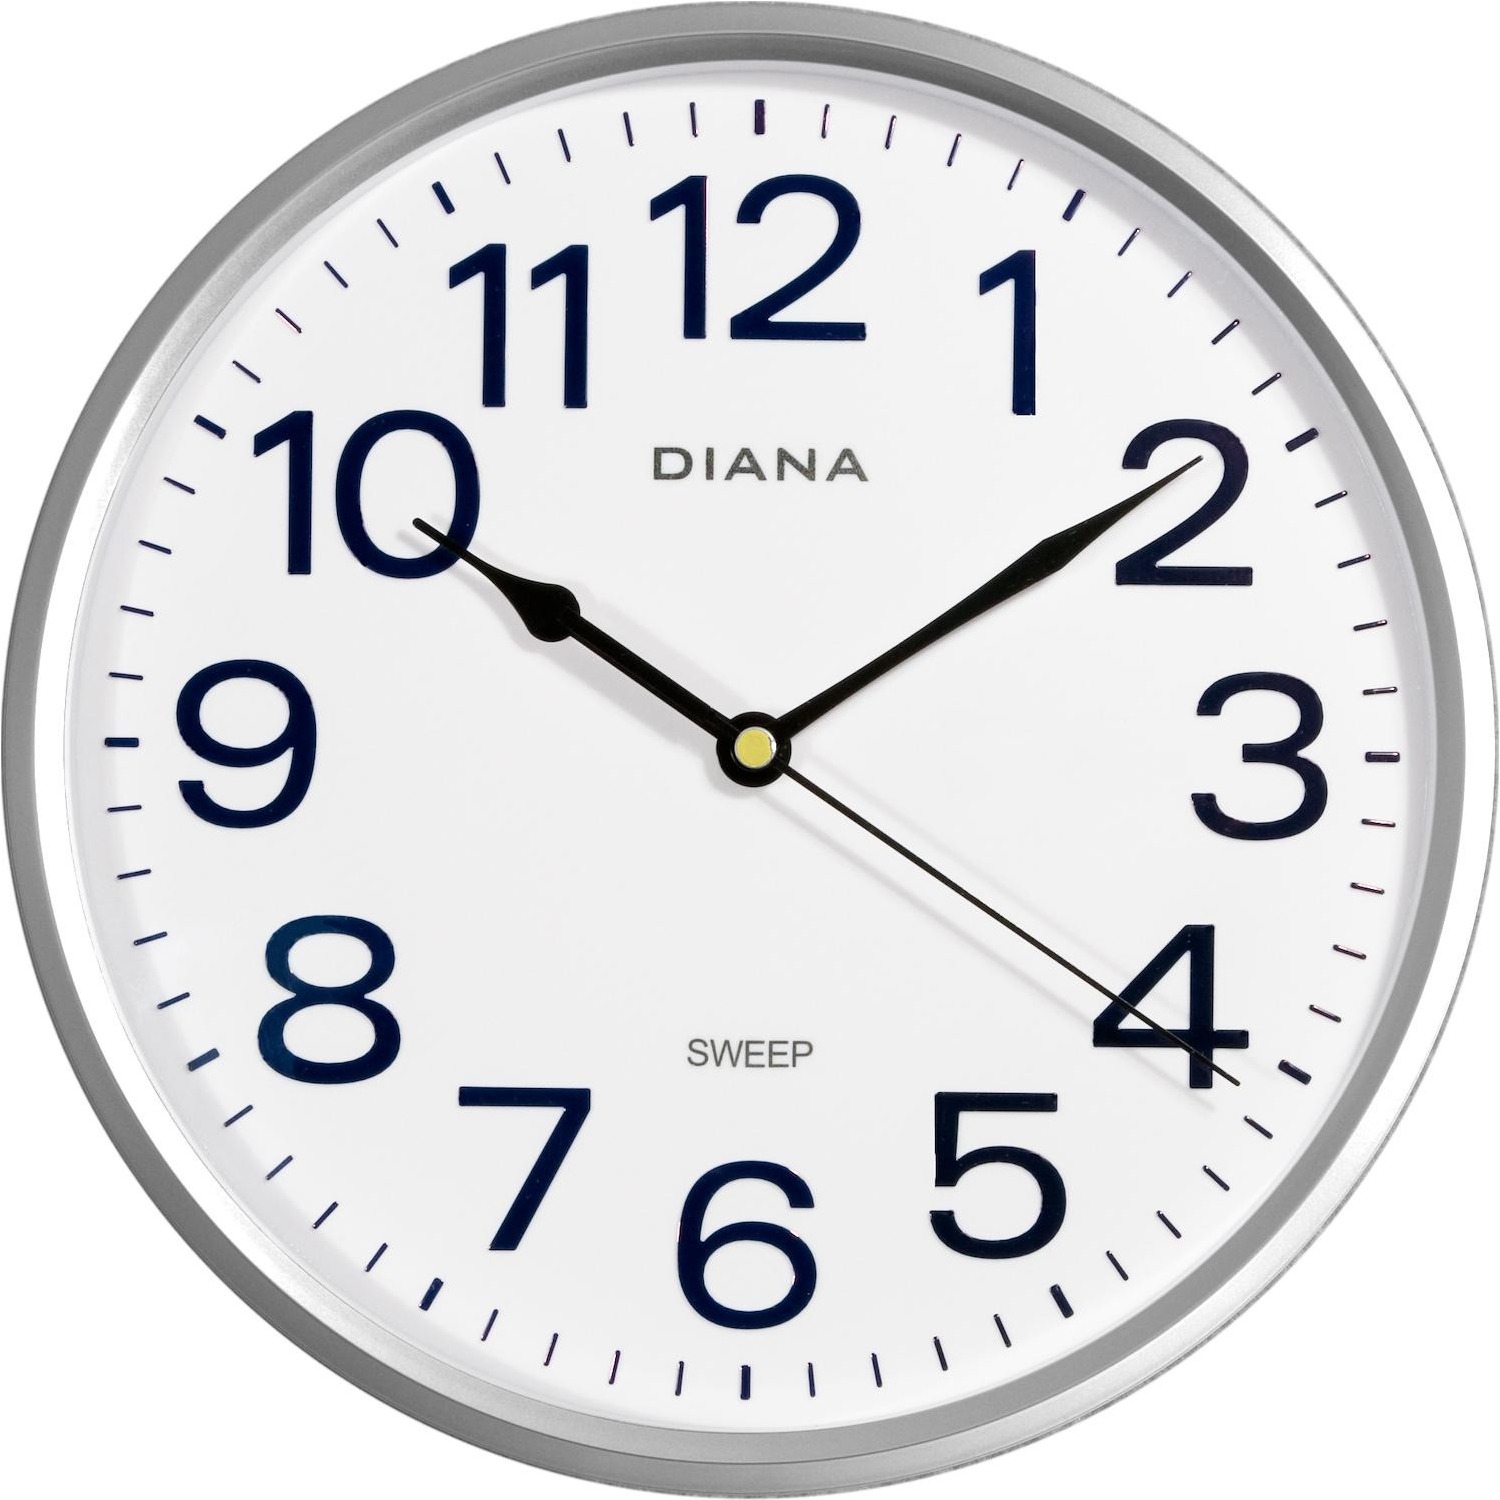 Immagine per Orologio da muro Diana 111739 movimento silenzioso diametro 255mm silver da DIMOStore